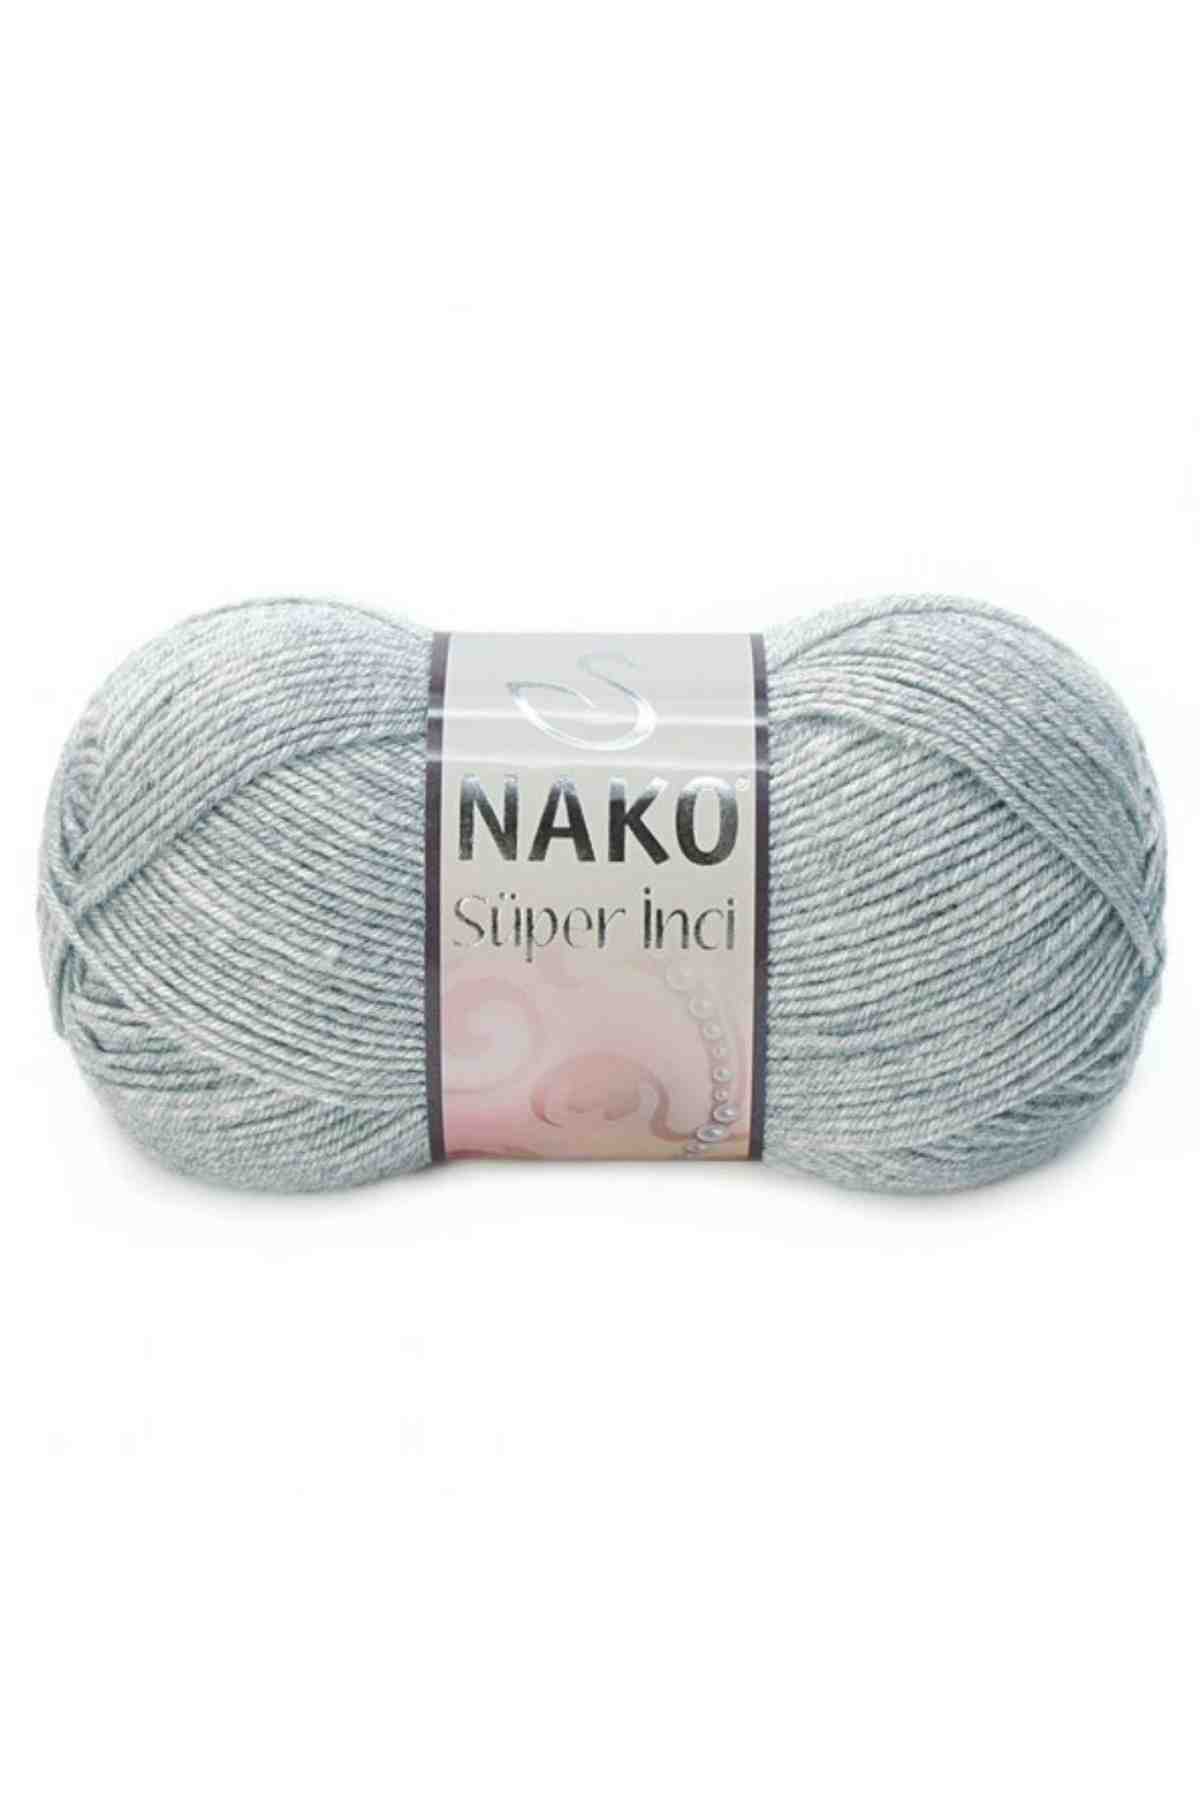 Nako Süper İnci Wool Yarn